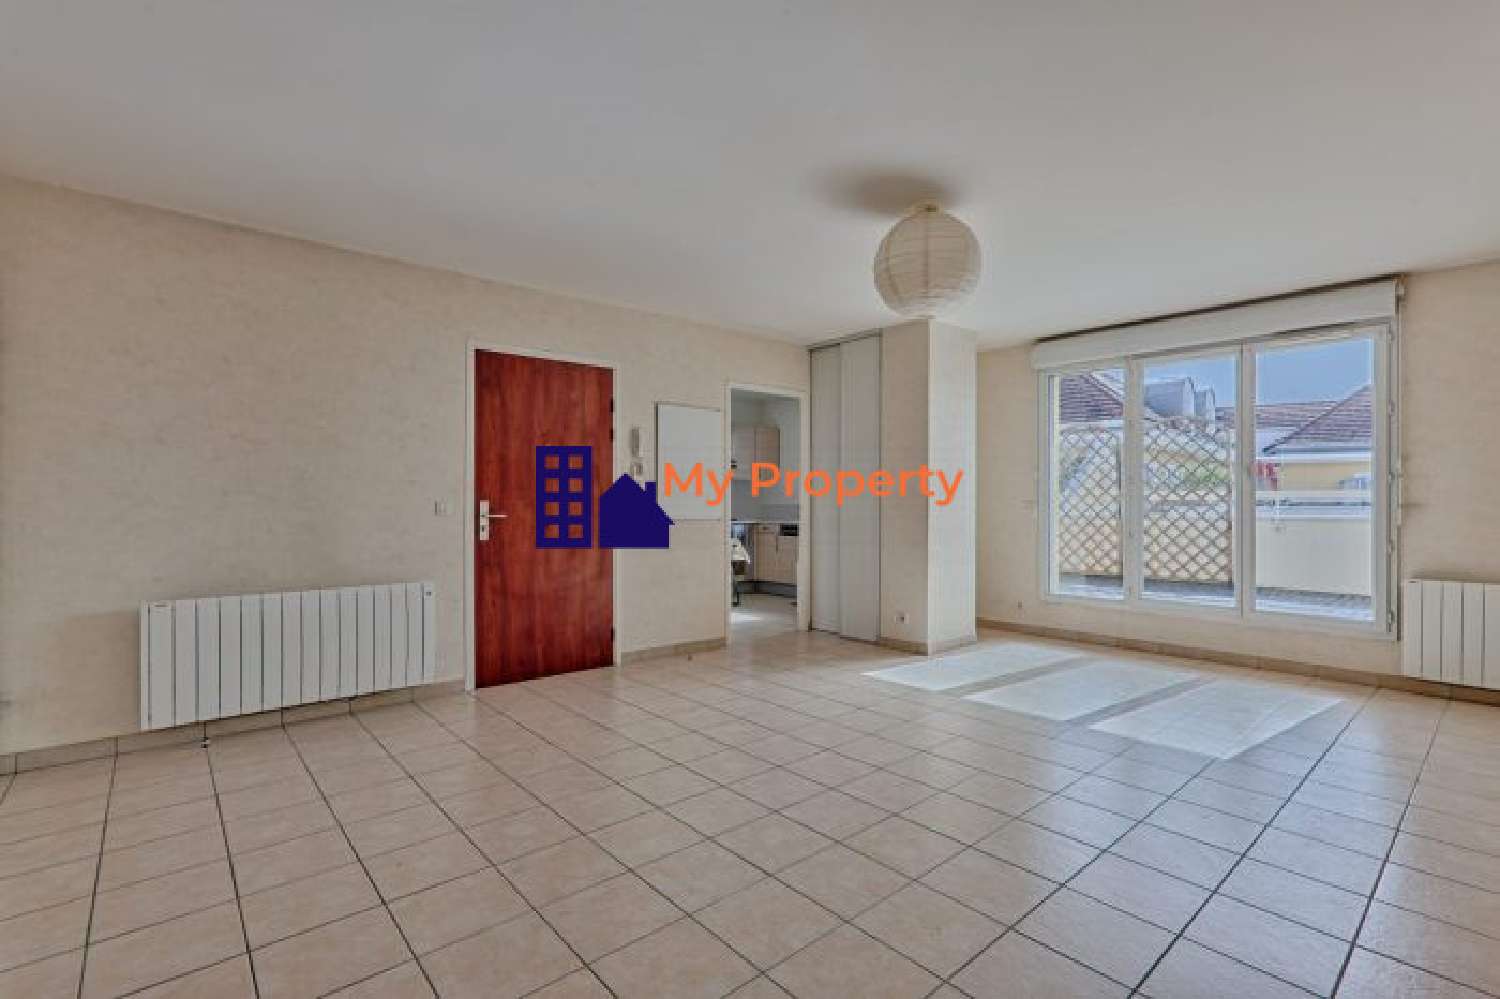  for sale apartment Carrières-sur-Seine Yvelines 4